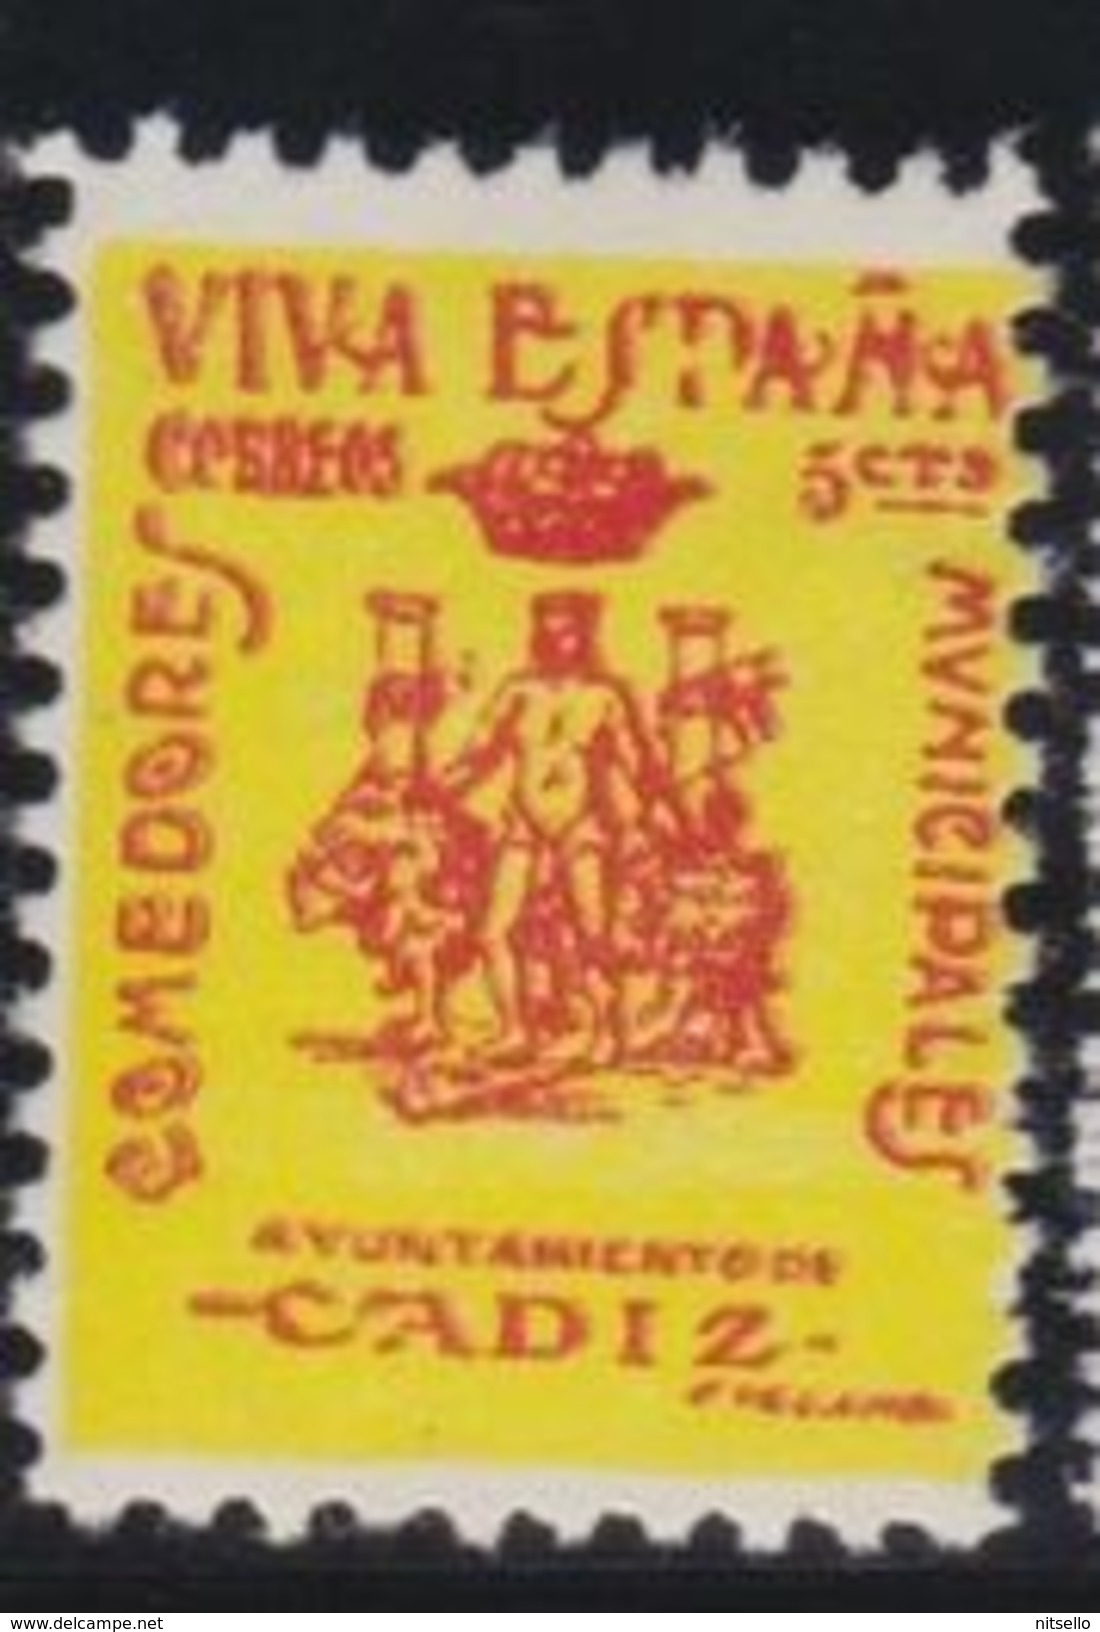 LOTE 2189  ///  (C035)  ESPAÑA  GUERRA CIVIL CADIZ *MH  NUEVO CON CHARNELA - Spanish Civil War Labels